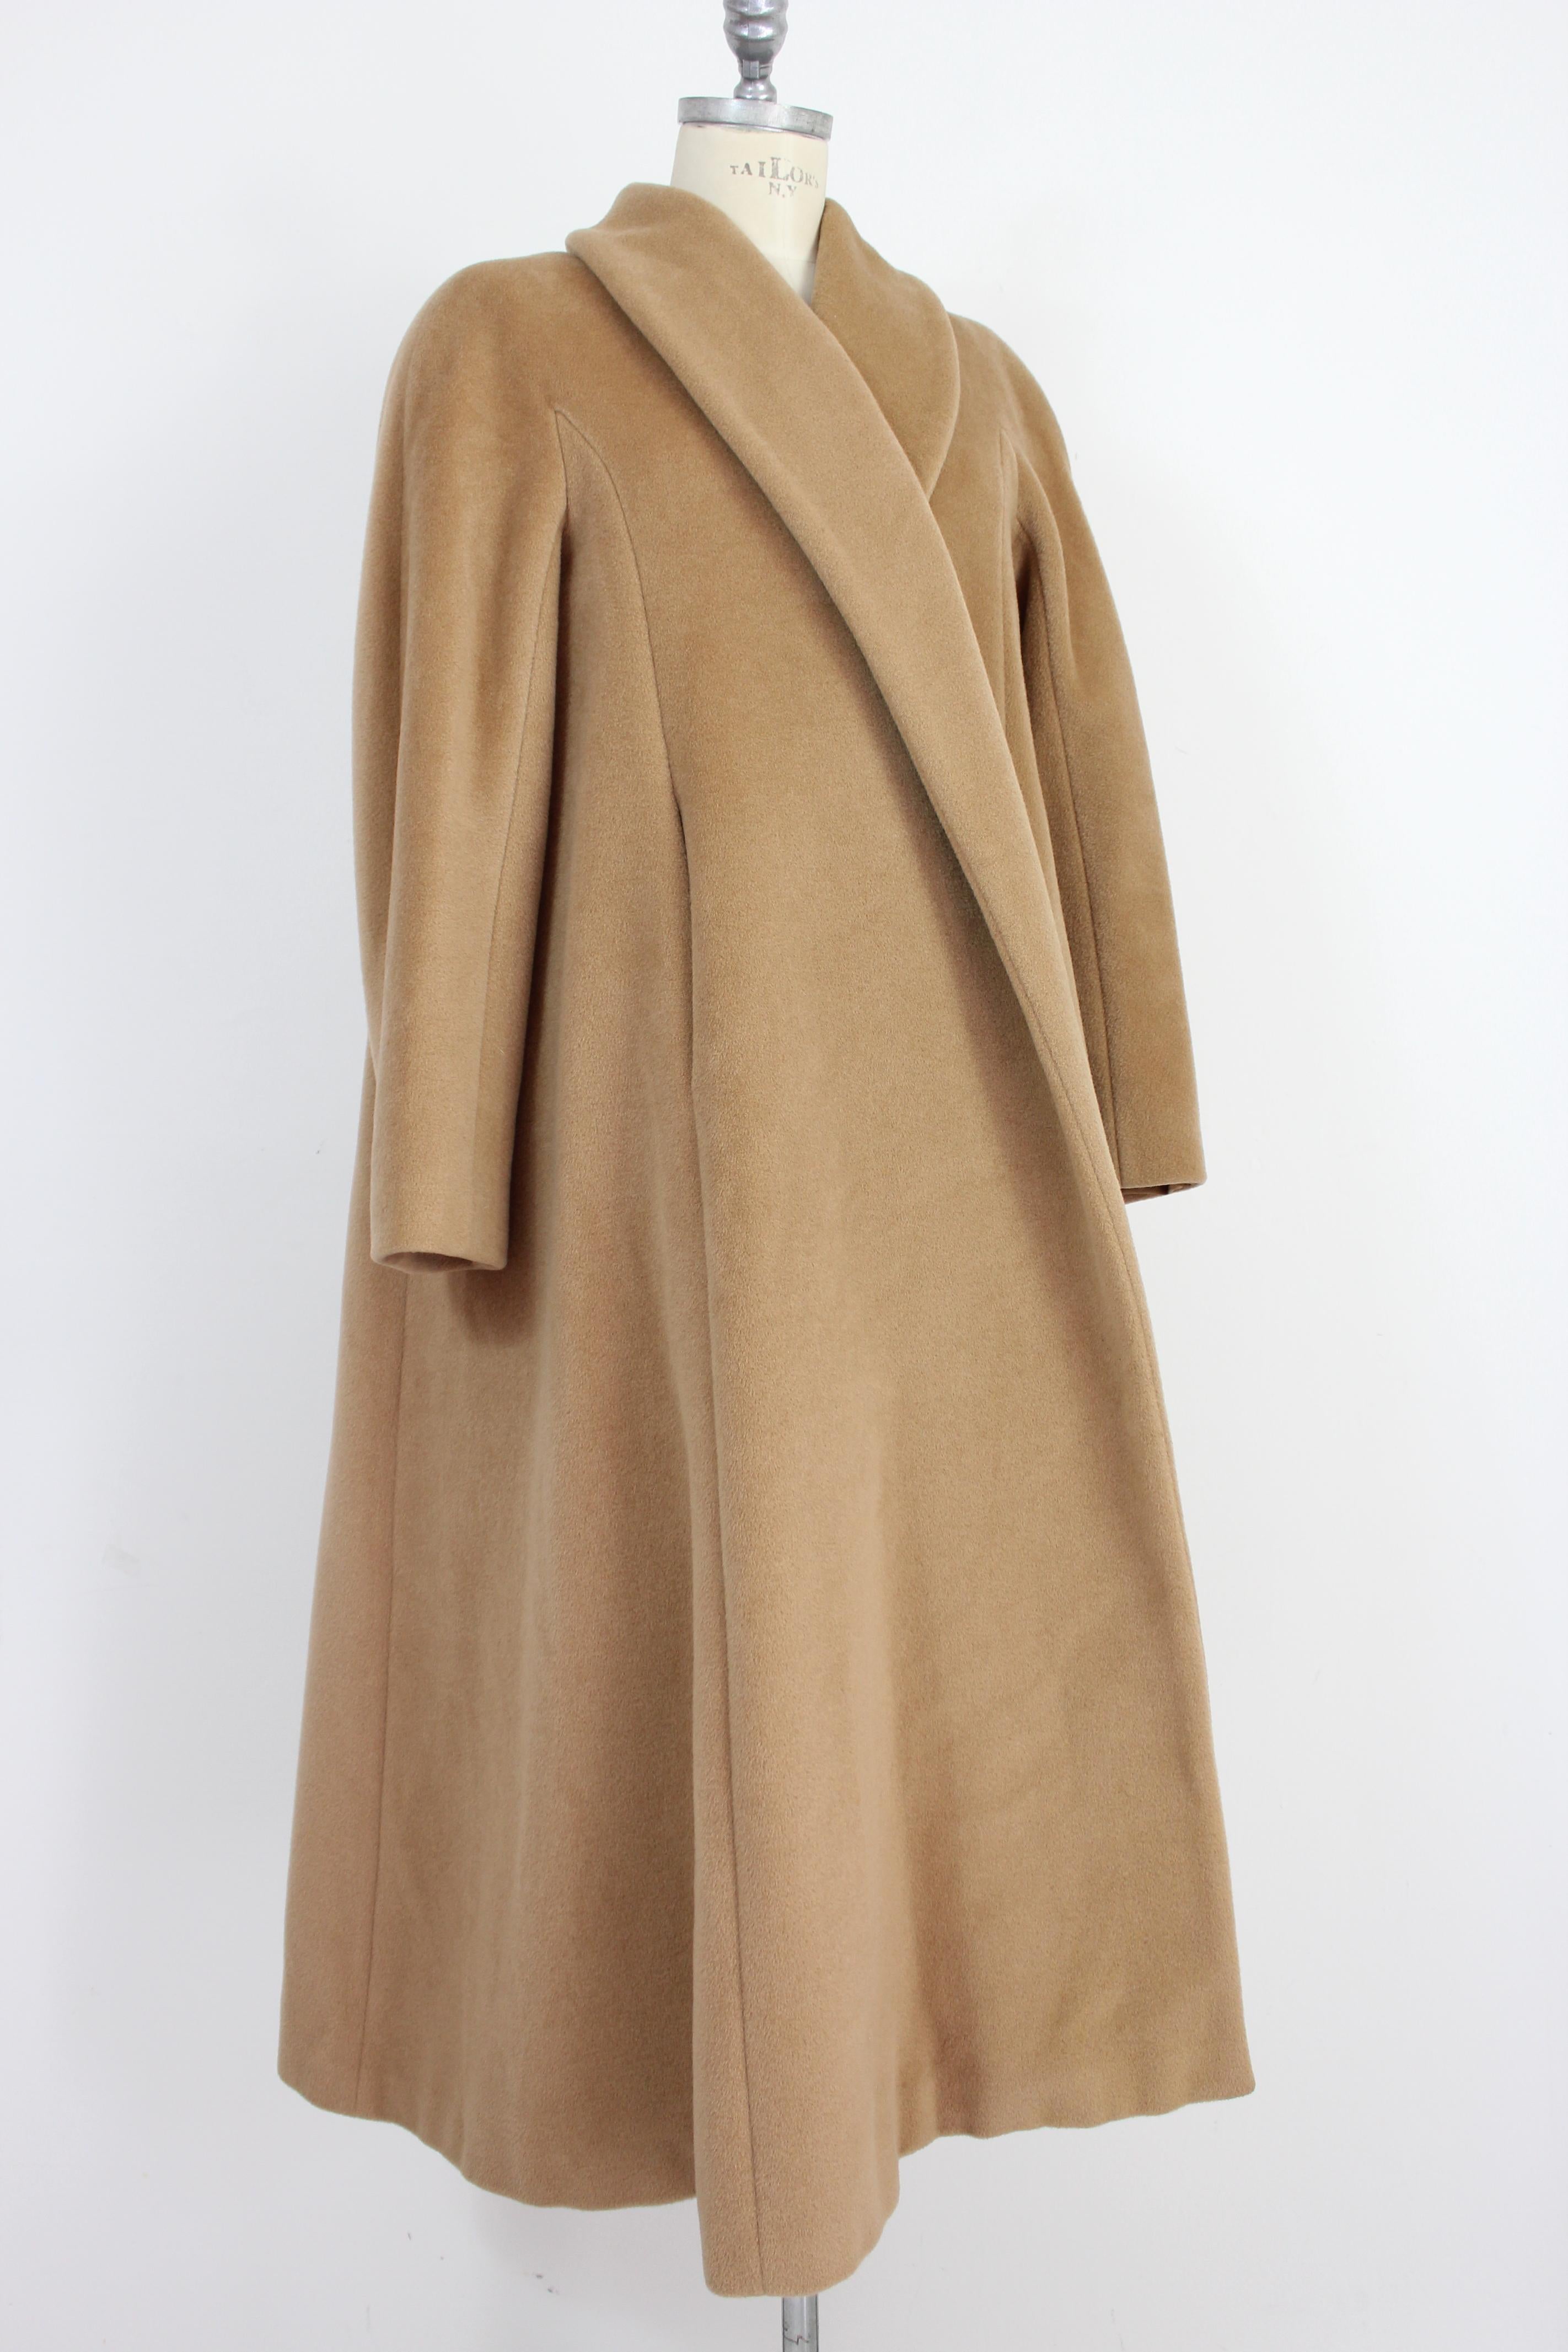 Women's Max Mara Beige Cashmere Wool Oversize Classic Coat